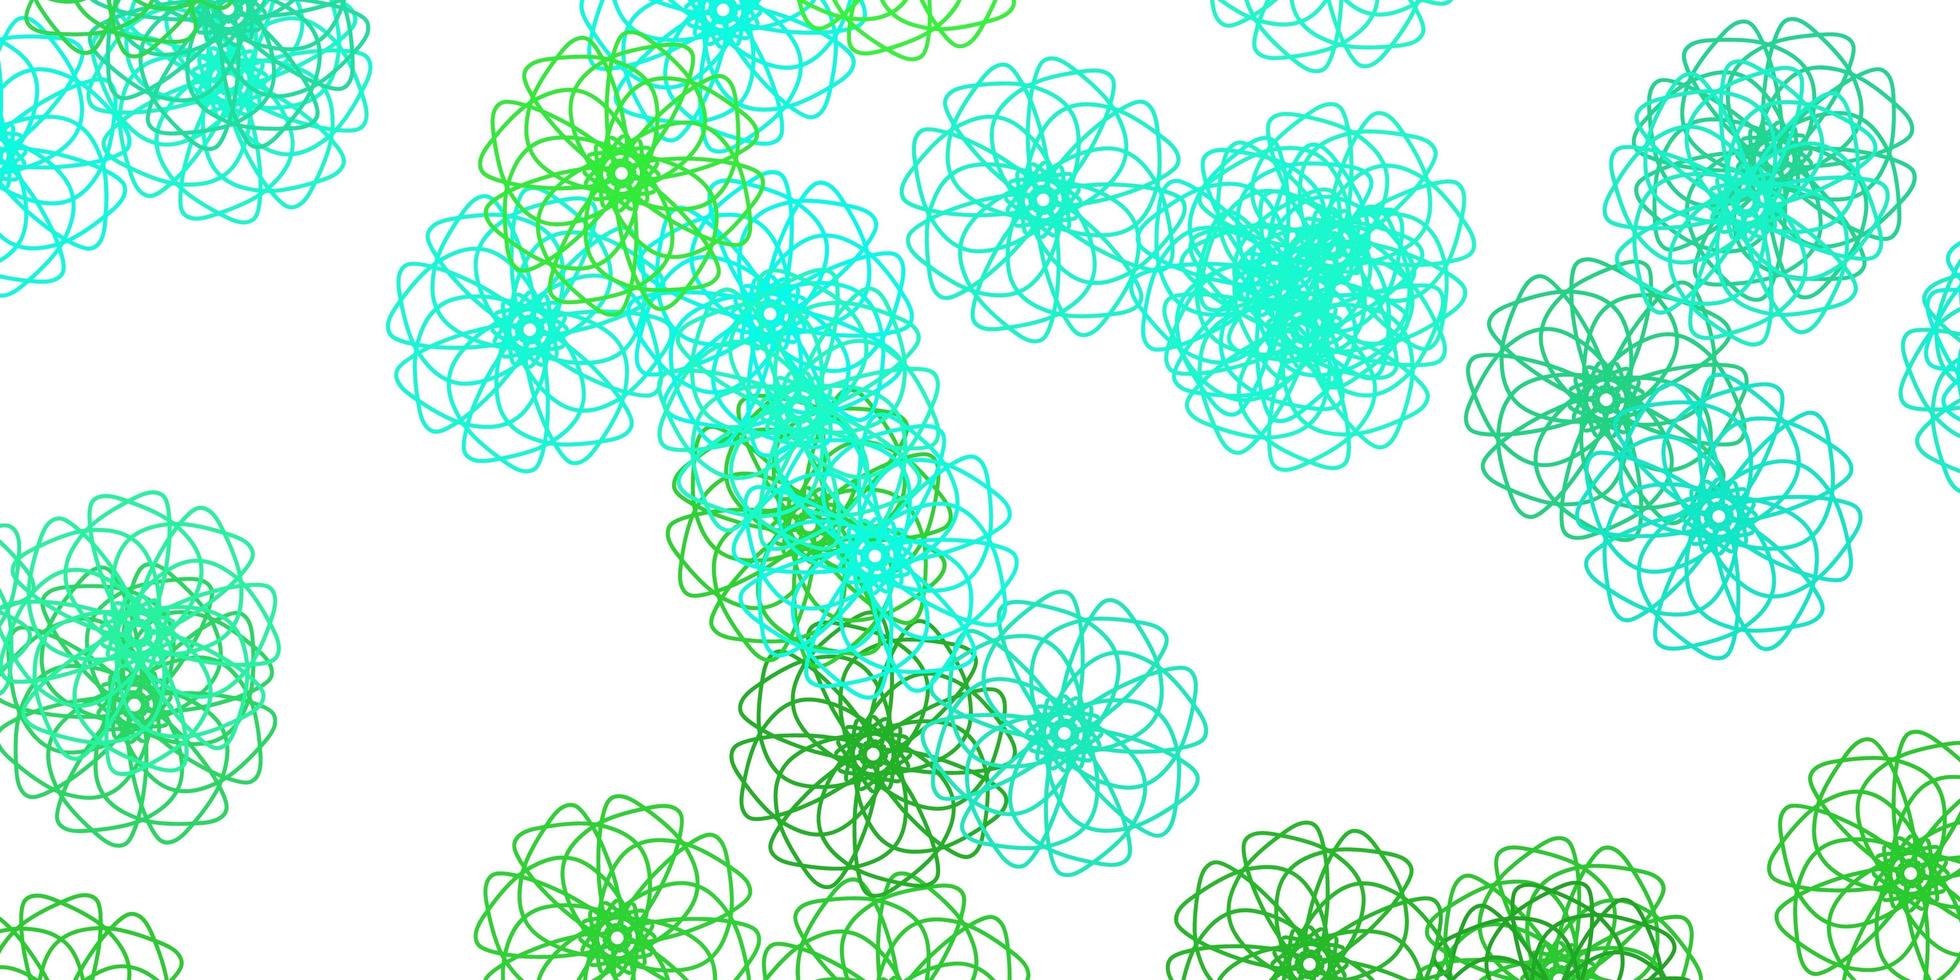 padrão de doodle de vetor verde claro com flores.